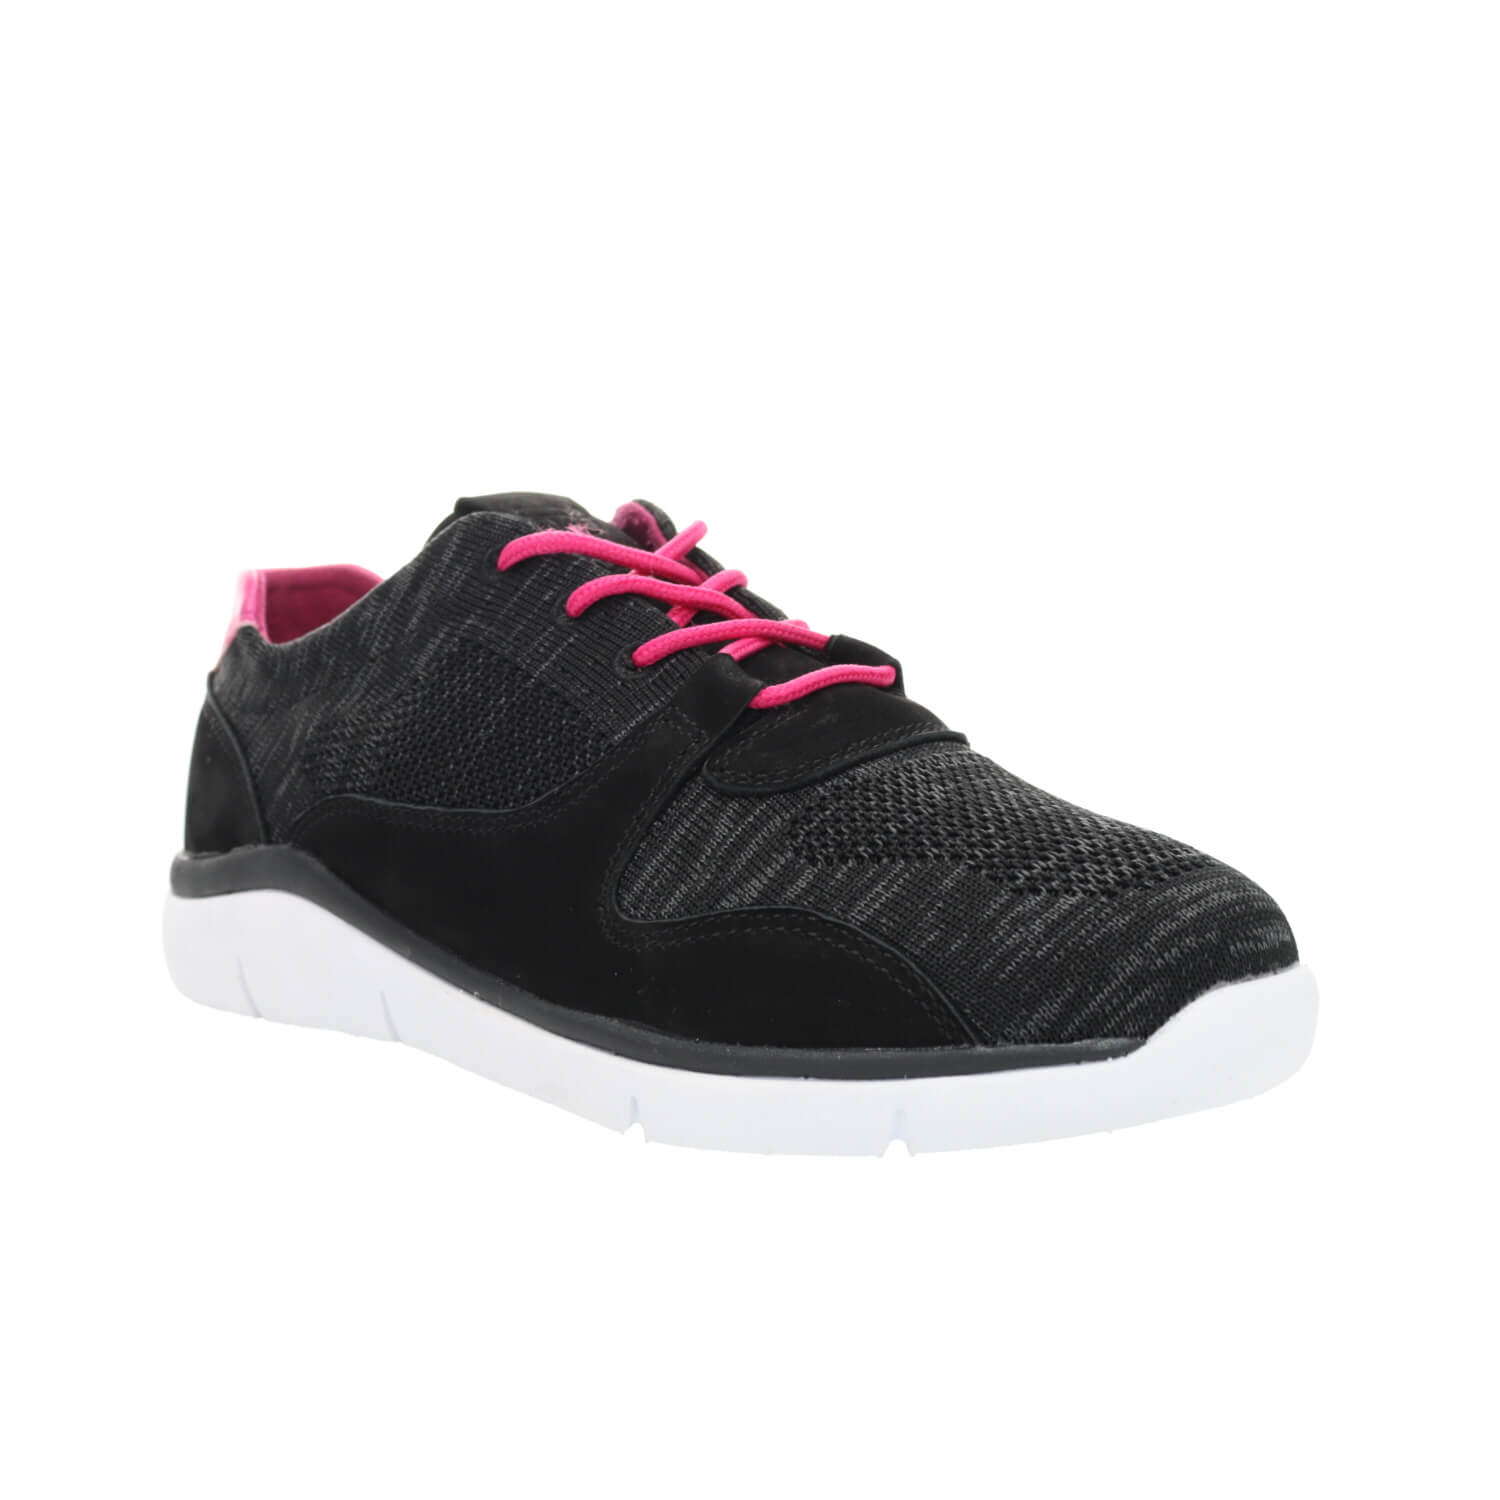 Propét Sarah - Women's Breathable Motion Control Sneakers - Color : Black/Pink, Shoe Siz